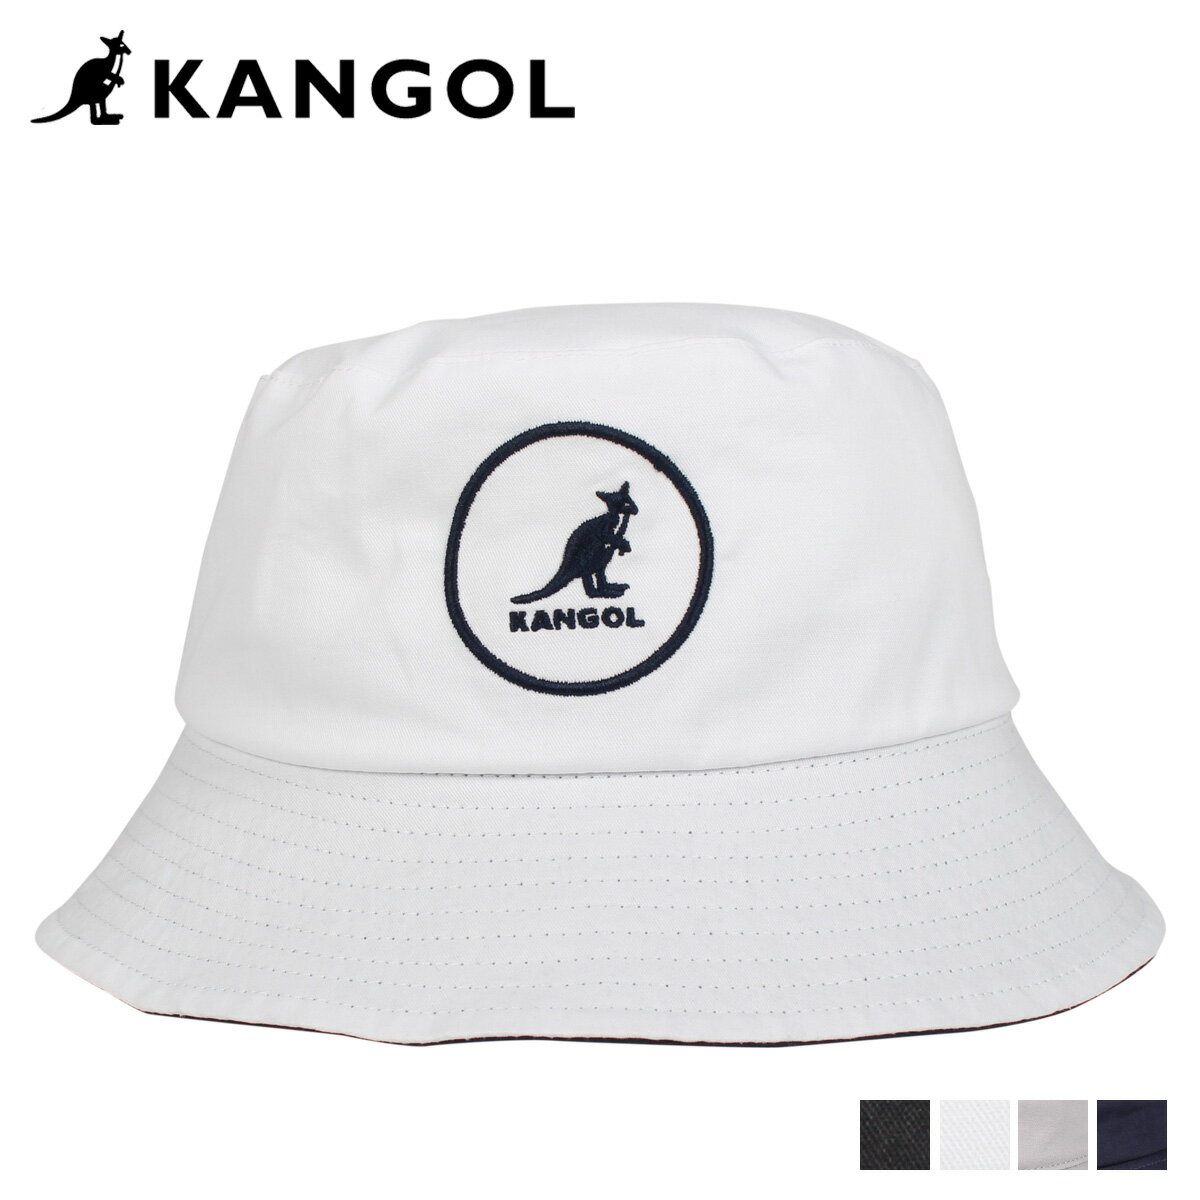 カンゴール KANGOL ハット キャップ 帽子 バケットハット メンズ レディース COTTON BUCKET ブラック ホワイト ライト グレー ネイビー 黒 白 100169222